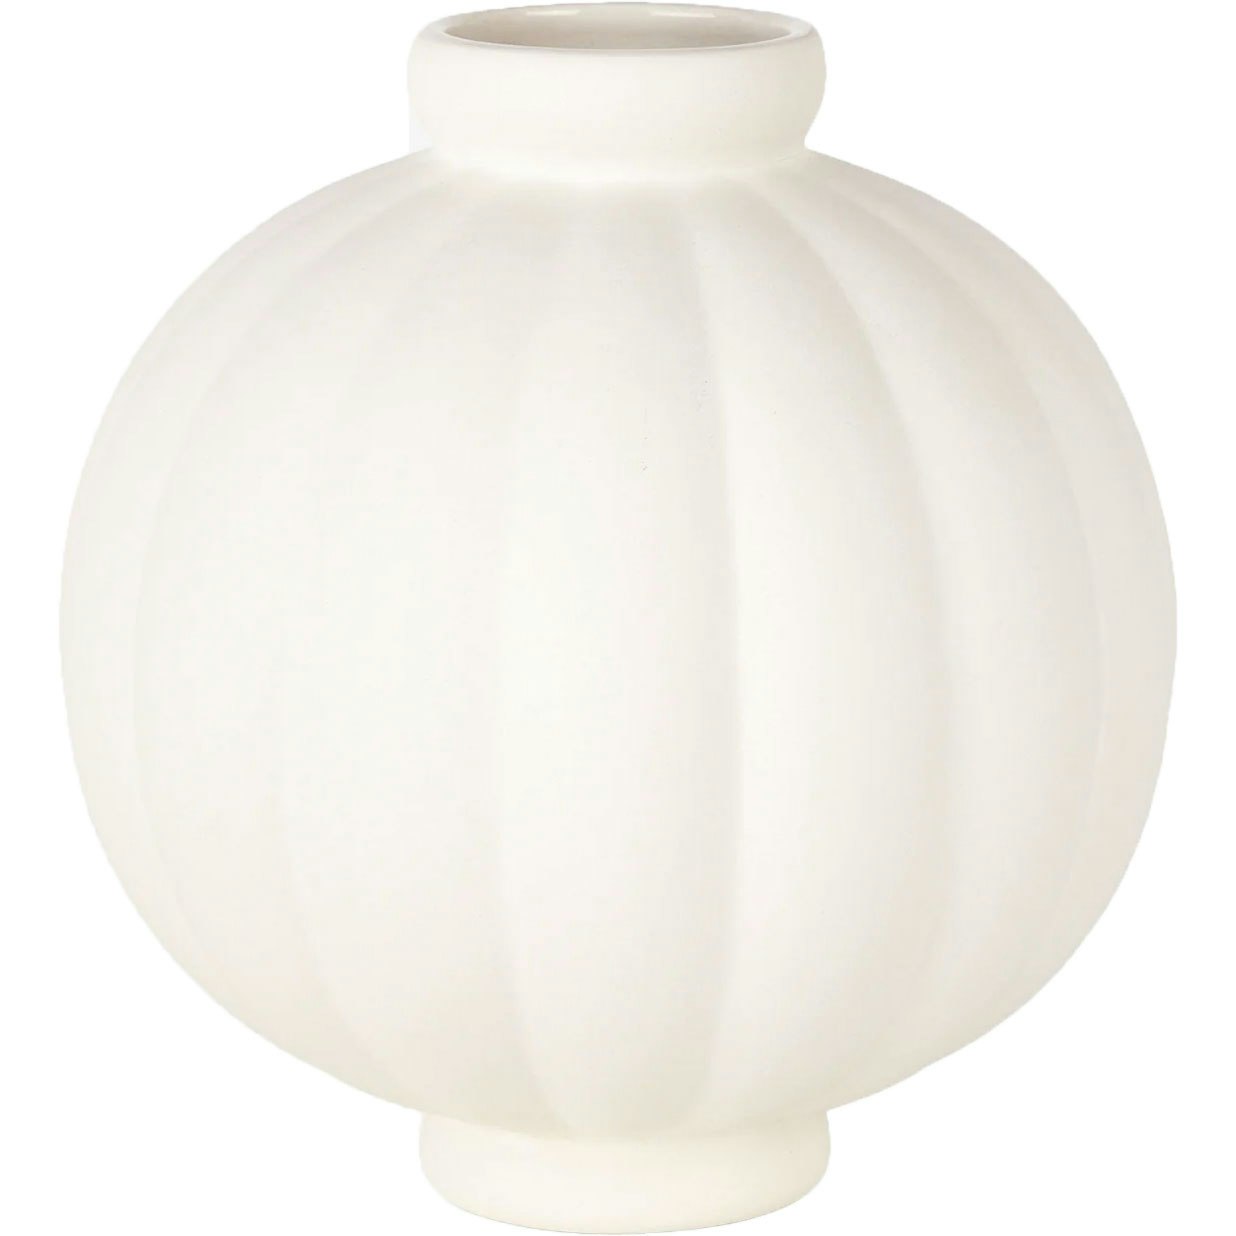 Balloon 01 Vase 25 cm, Raw White